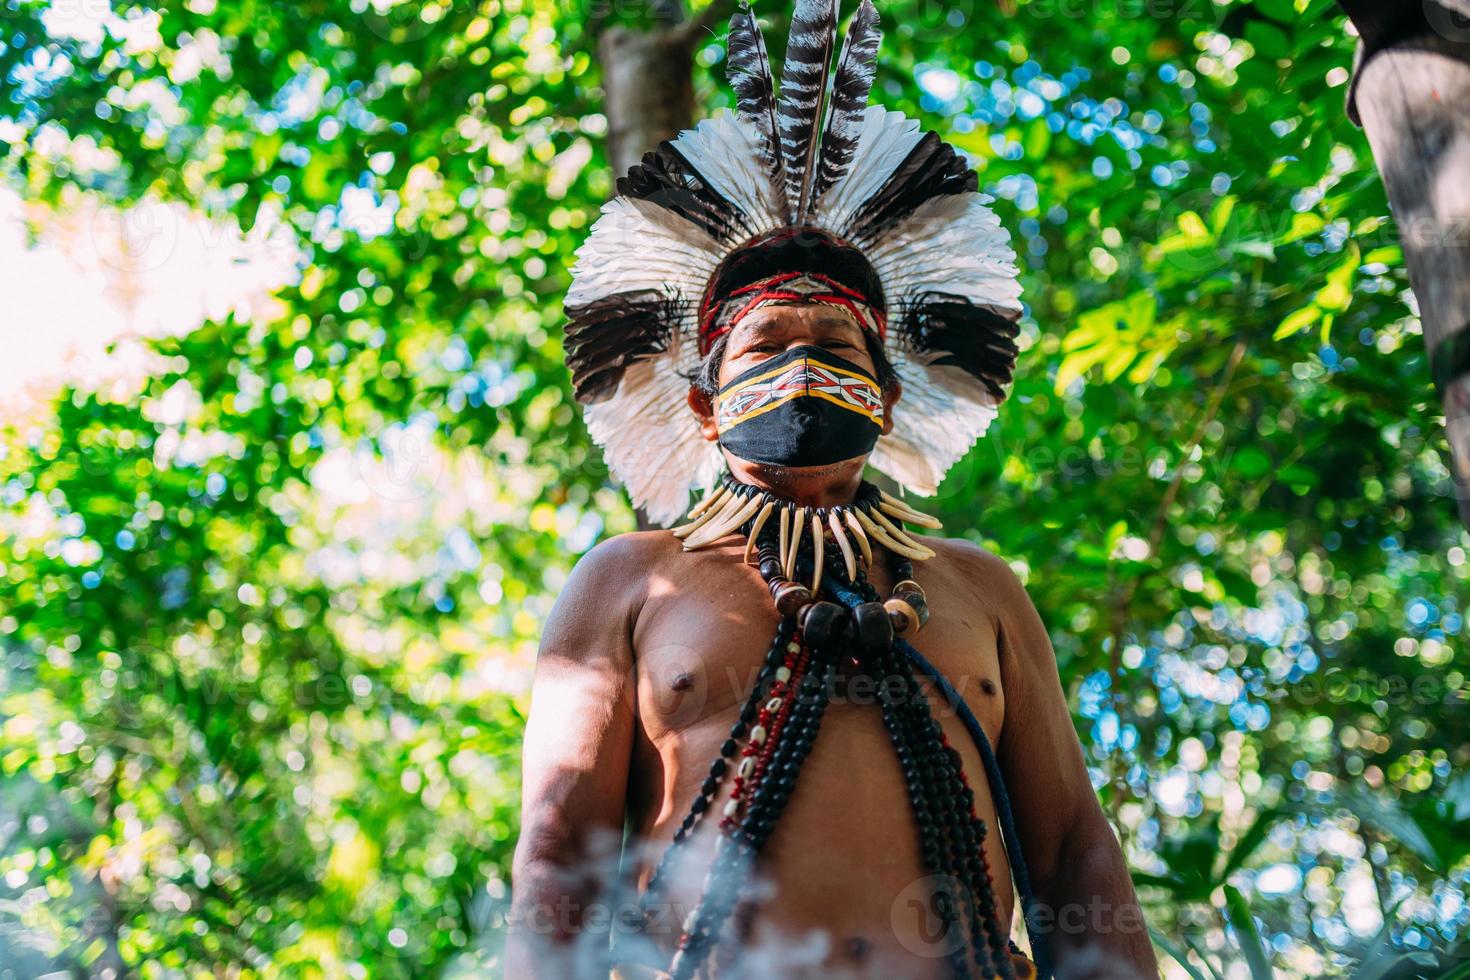 shaman av pataxostammen. äldre indisk man som bär huvudbonad med fjäder och ansiktsmask på grund av covid-19-pandemin. brasiliansk indian tittar på kameran foto